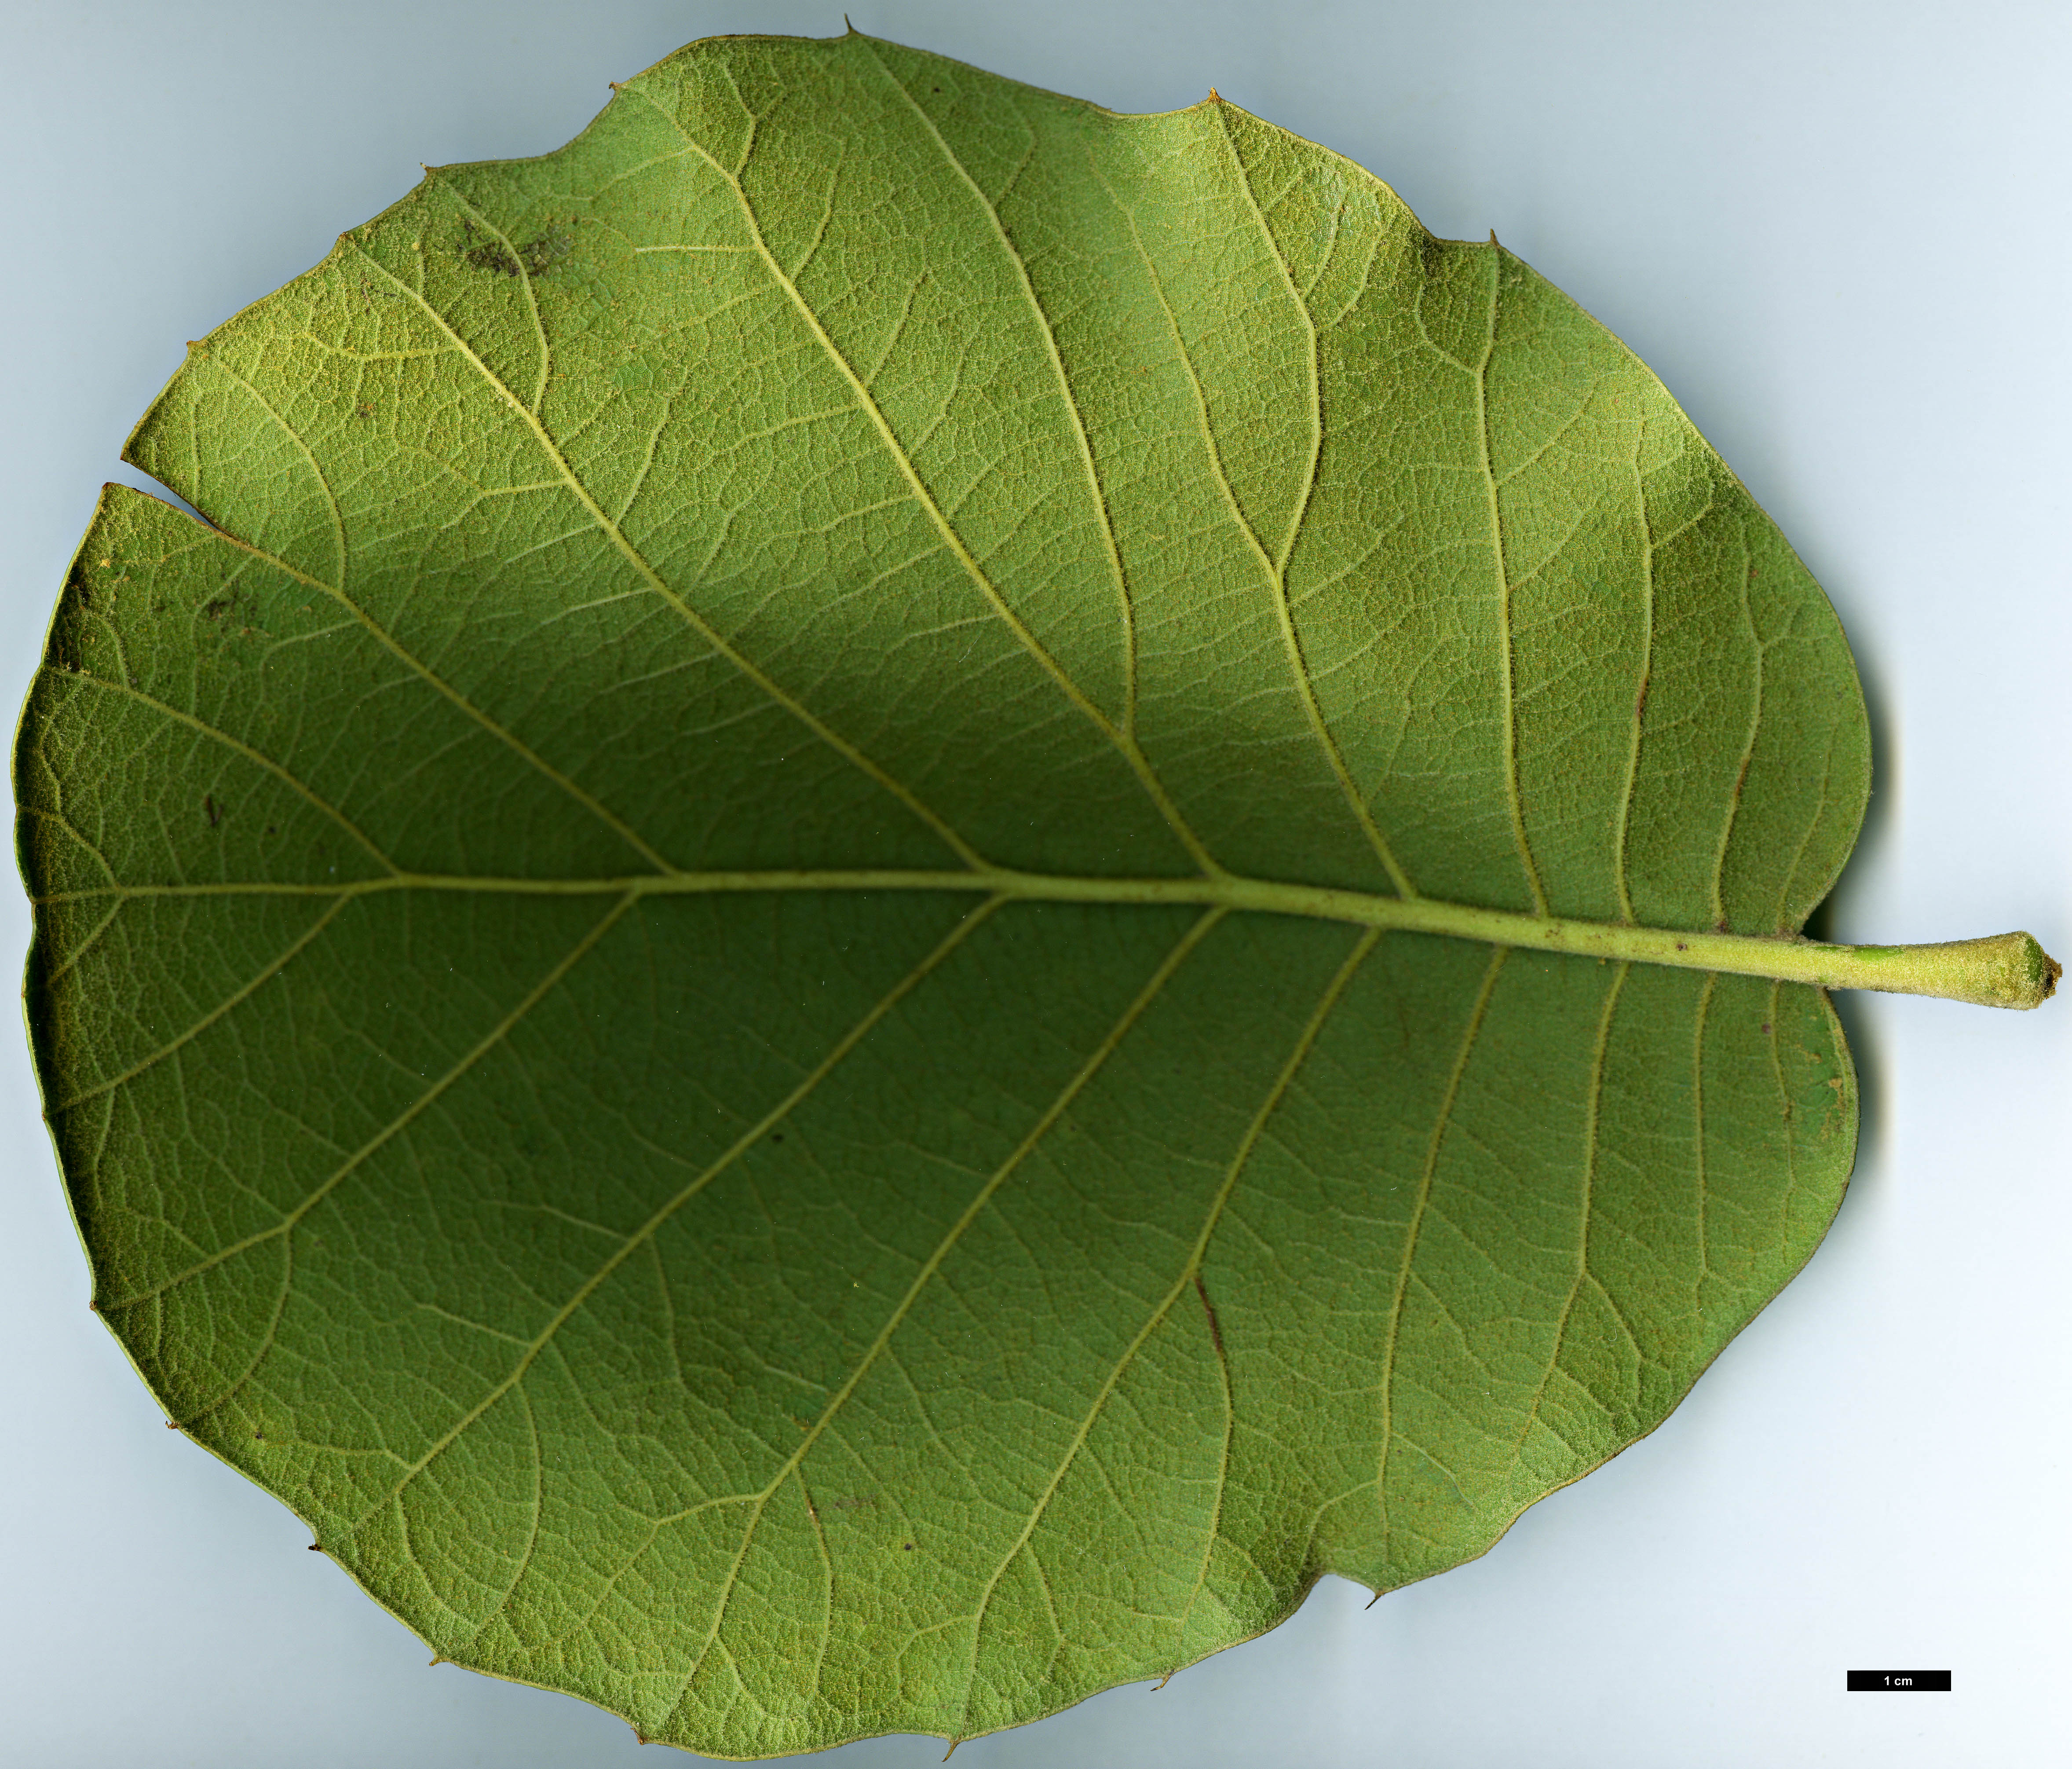 High resolution image: Family: Fagaceae - Genus: Quercus - Taxon: tarahumara